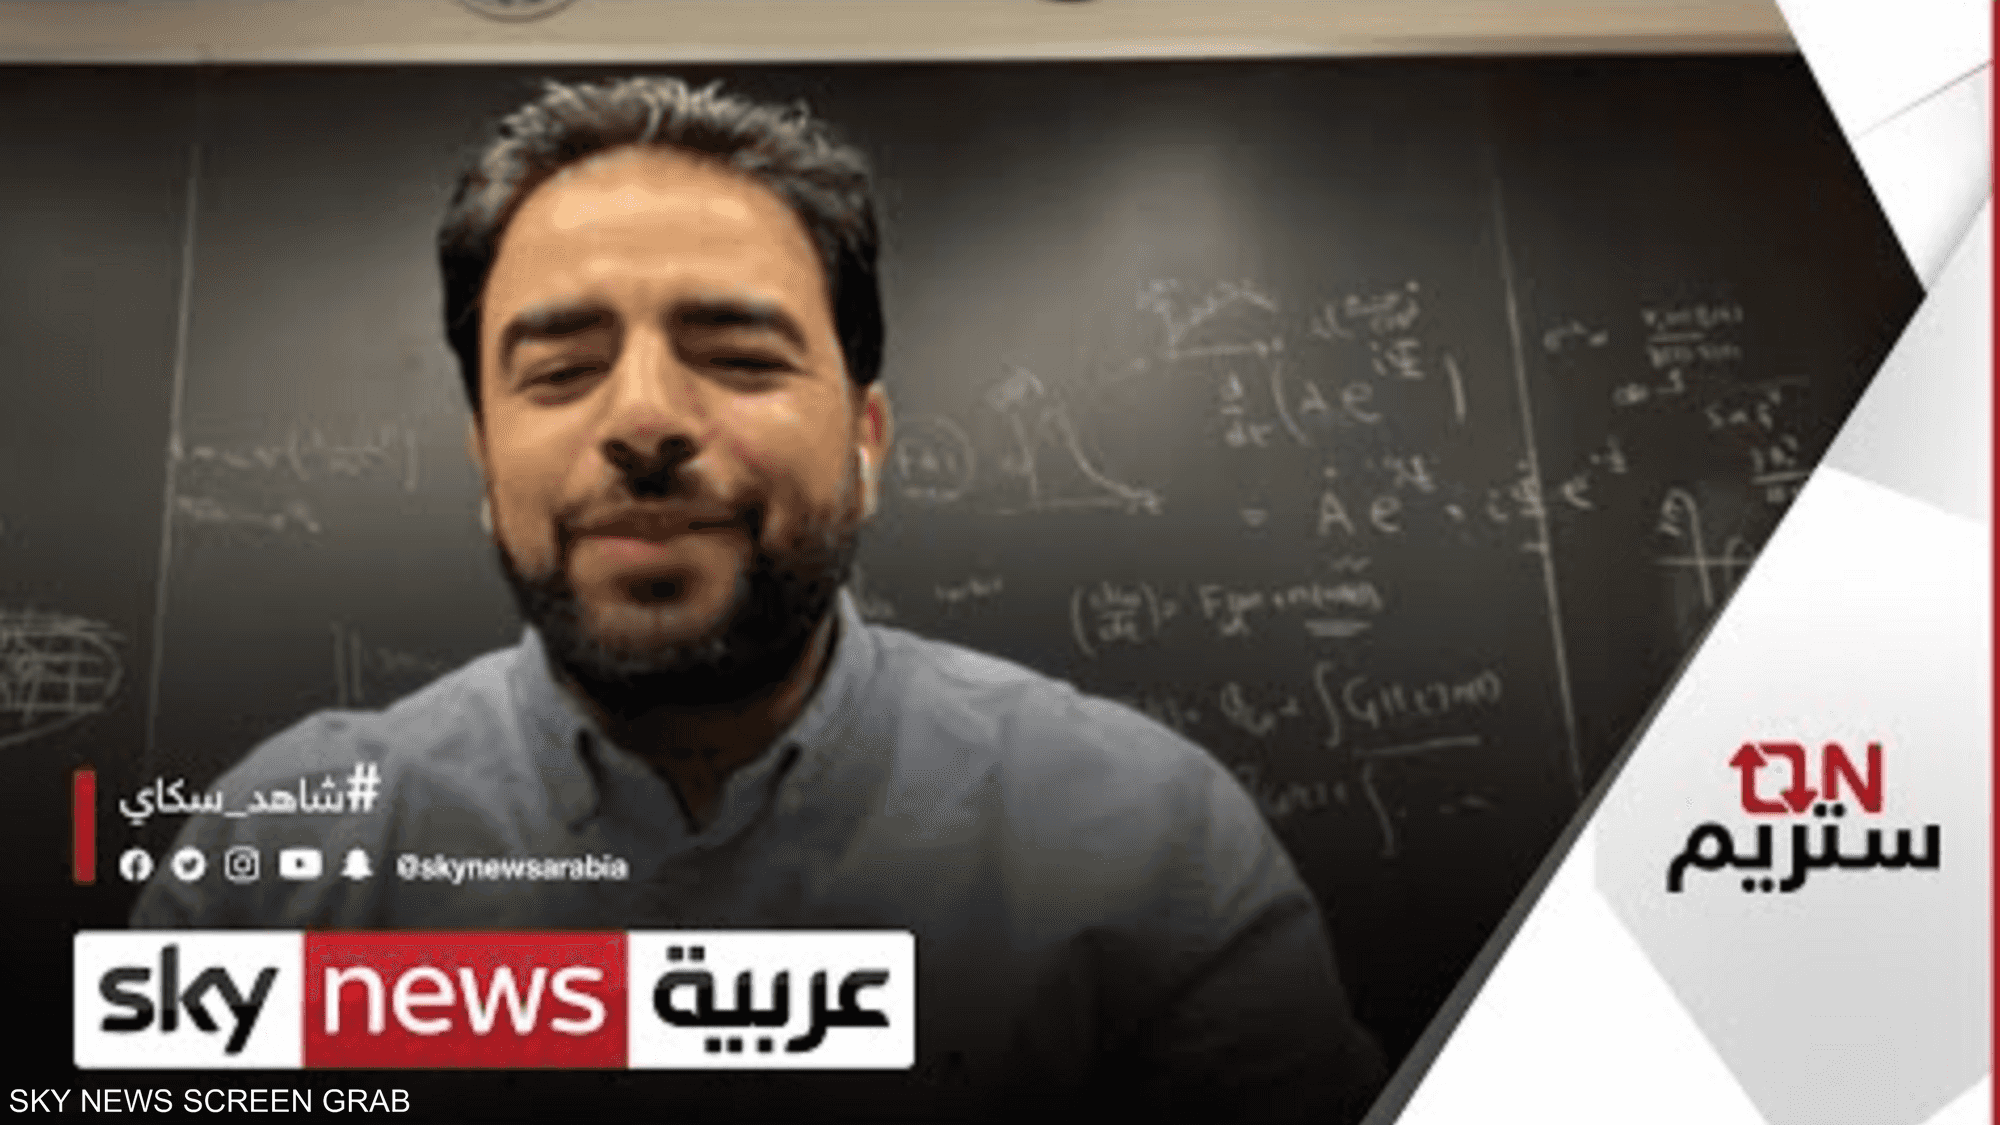 عالم مصري يشارك "ناسا" في رحلة البحث عن نشأة الكون